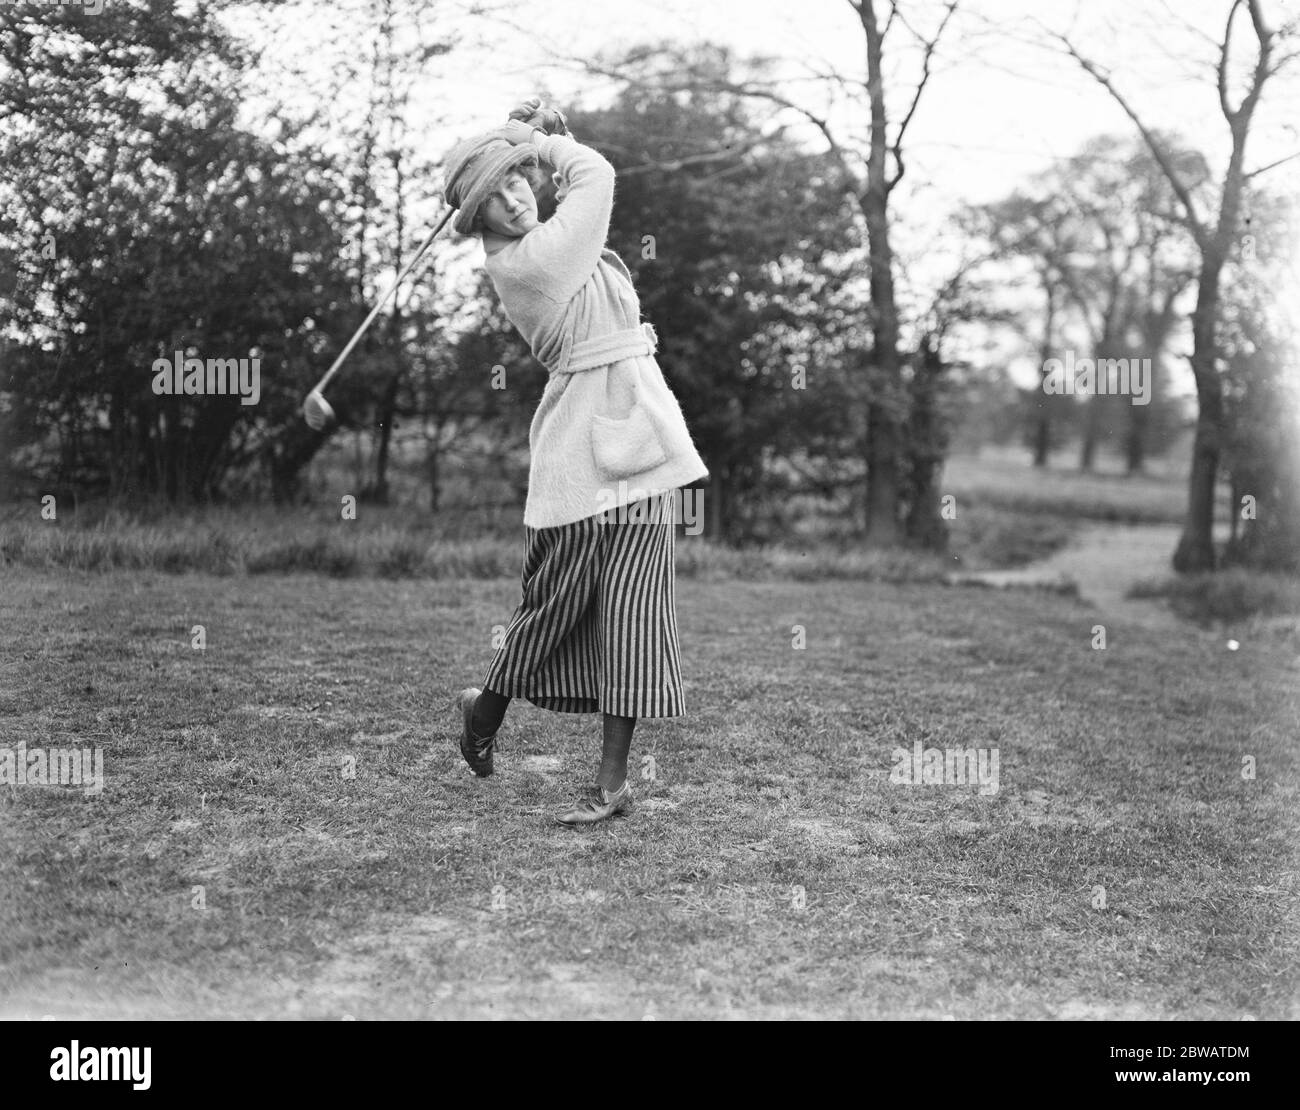 Torneo de golf de damas Inter asociación en Edgware Marchioness de Titchfield ( Parlamentario ) conducción 28 de abril de 1920 Foto de stock